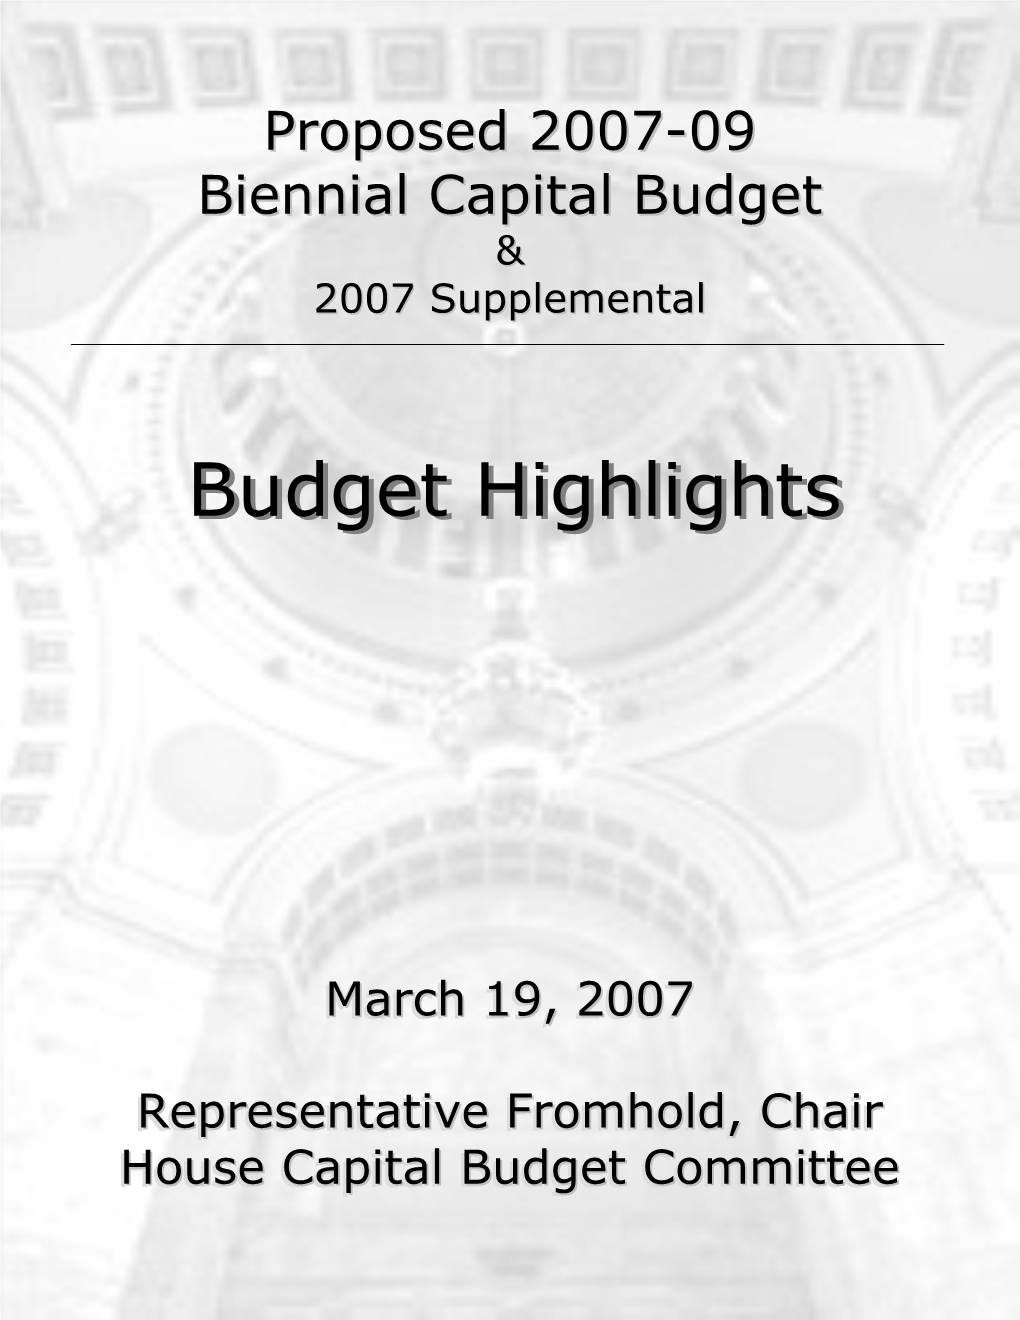 Budget Highlightshighlights